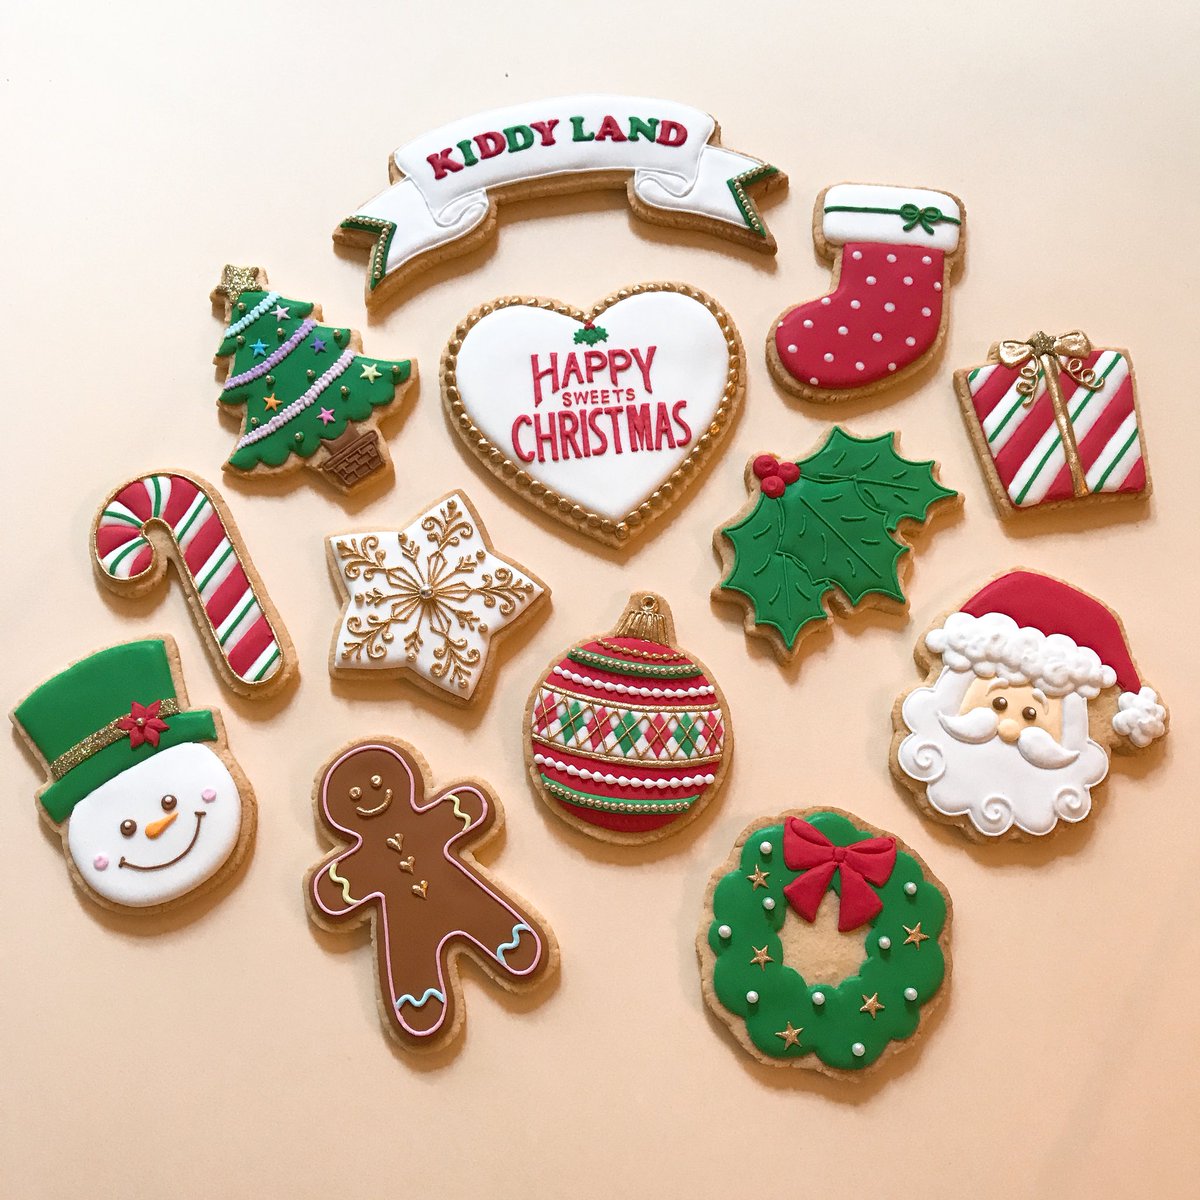 Kunika Twitterissa Kiddy Land Happy Sweets Christmas 今年のキディランドさんの クリスマス アイシングクッキーデザインのショップ袋とタグが11月18日から登場します 小さなお子様から大人まで 沢山の方の素敵なクリスマスを彩れるよう願いを込めて